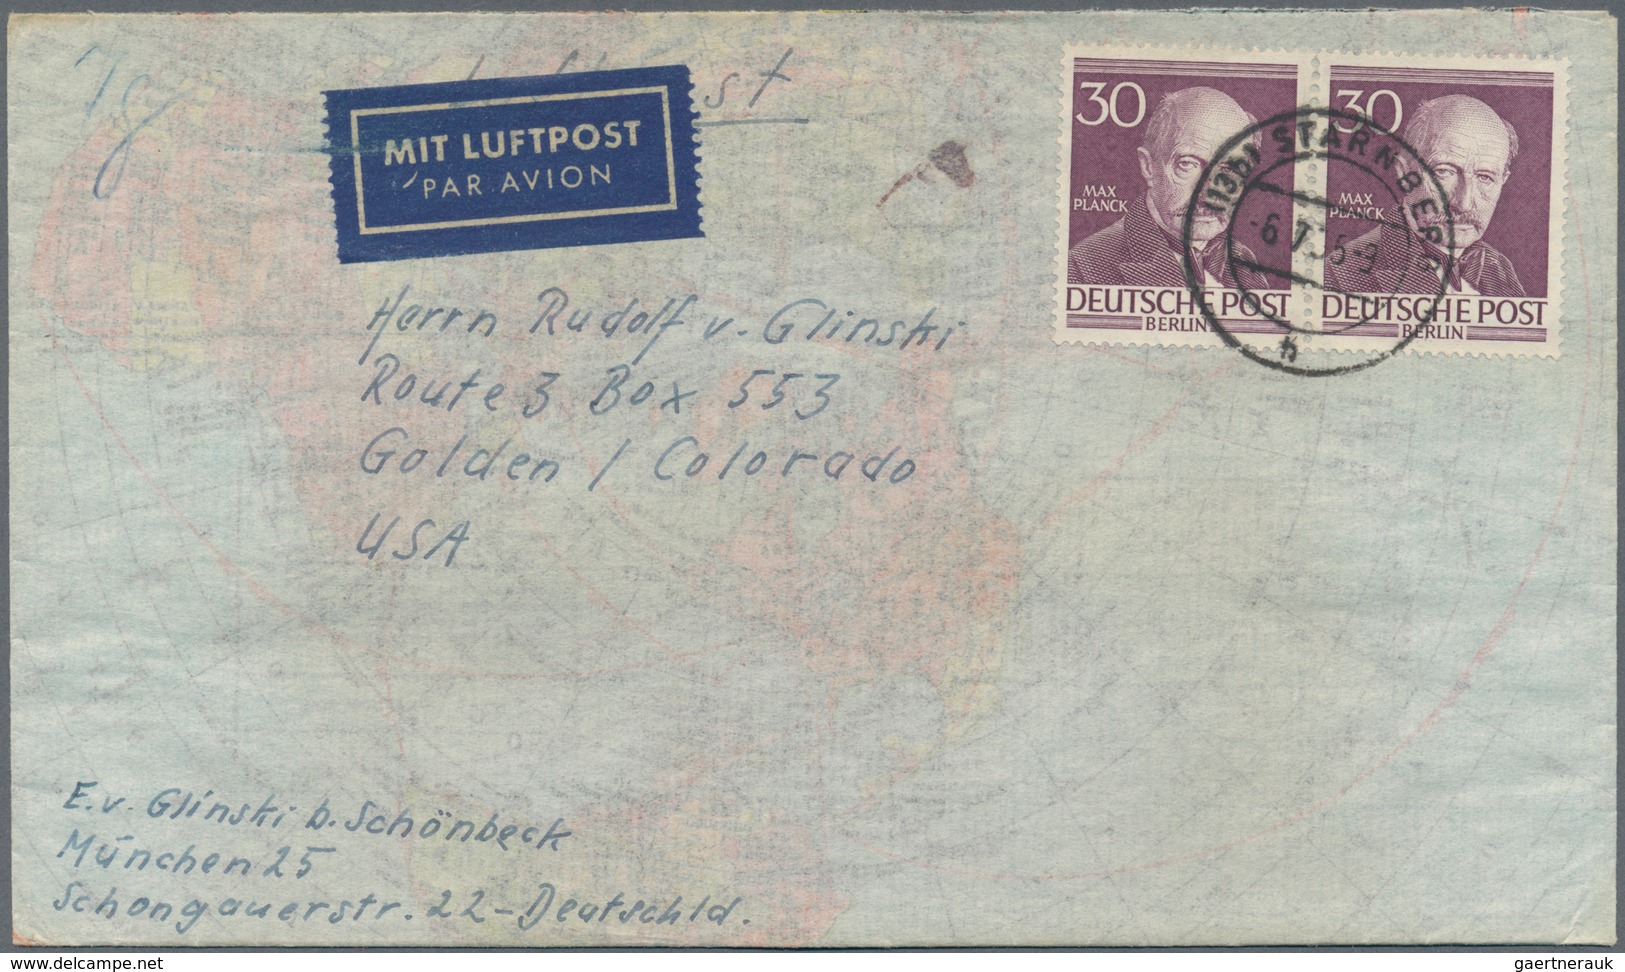 Berlin: 1952/1960, vielseitiger Posten von ca. 195 Briefen und Karten aus alter Familien-Korresponde